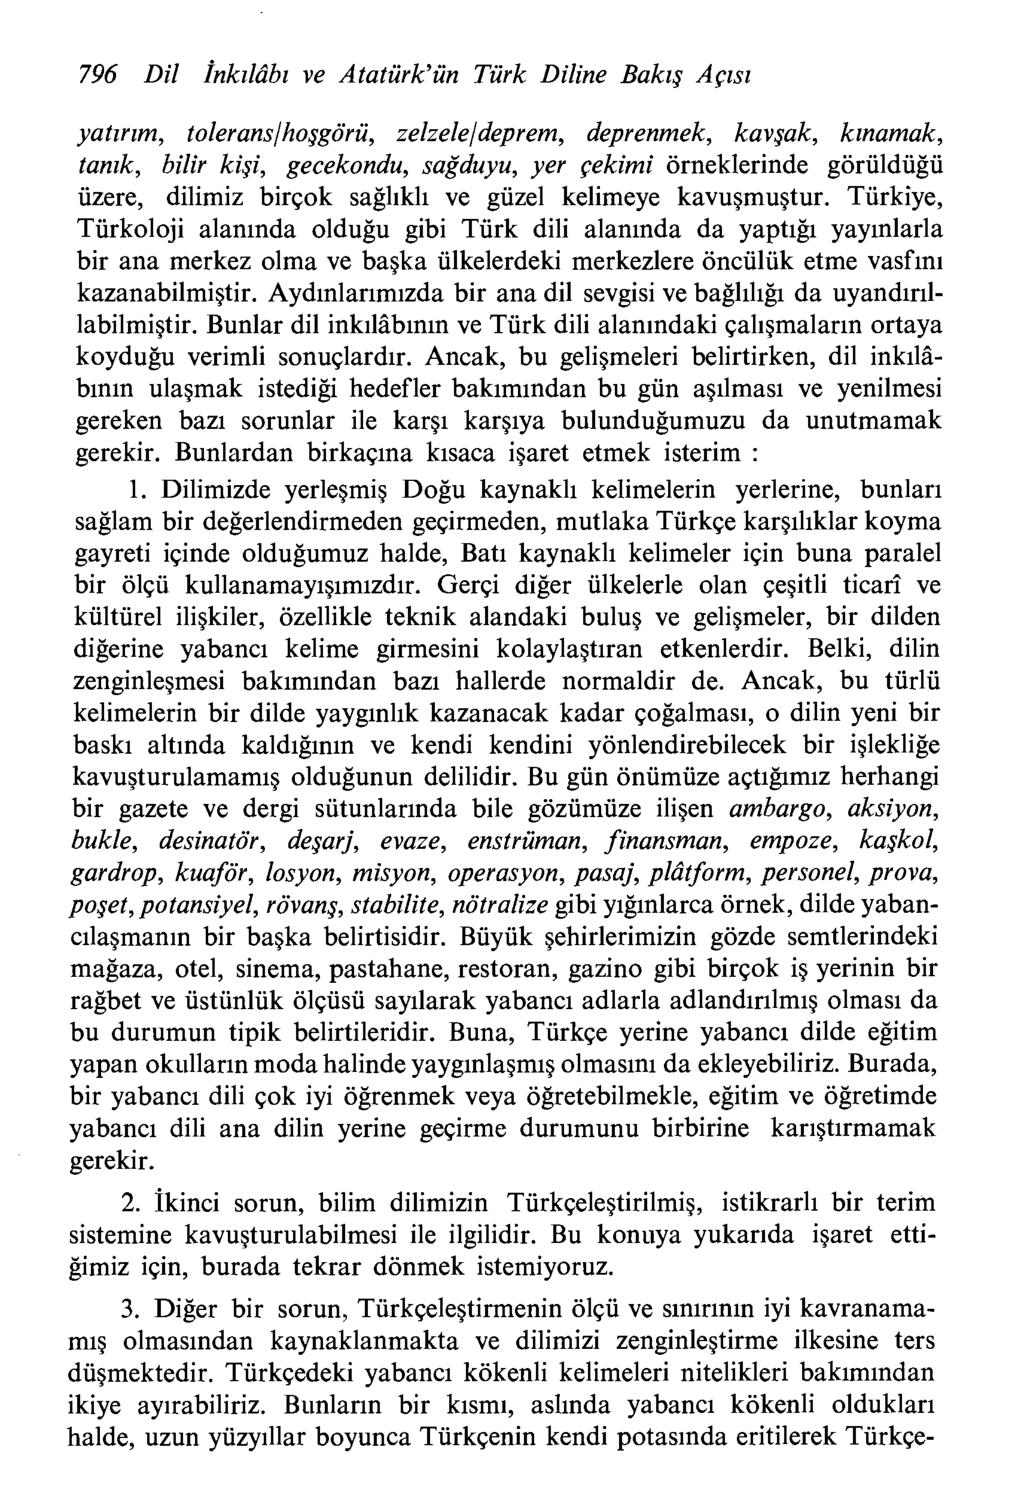 796 Dil fnkzlribz ve Ataturk'un Turk Diline Bakzg Apsz yatzrzm, tolerans/hoggoru, zelzeleldeprem, deprenmek, kavgak, kznamak, tanzk, bilir kigi, gecekondu, sag'duyu, yer ~ekimi orneklerinde